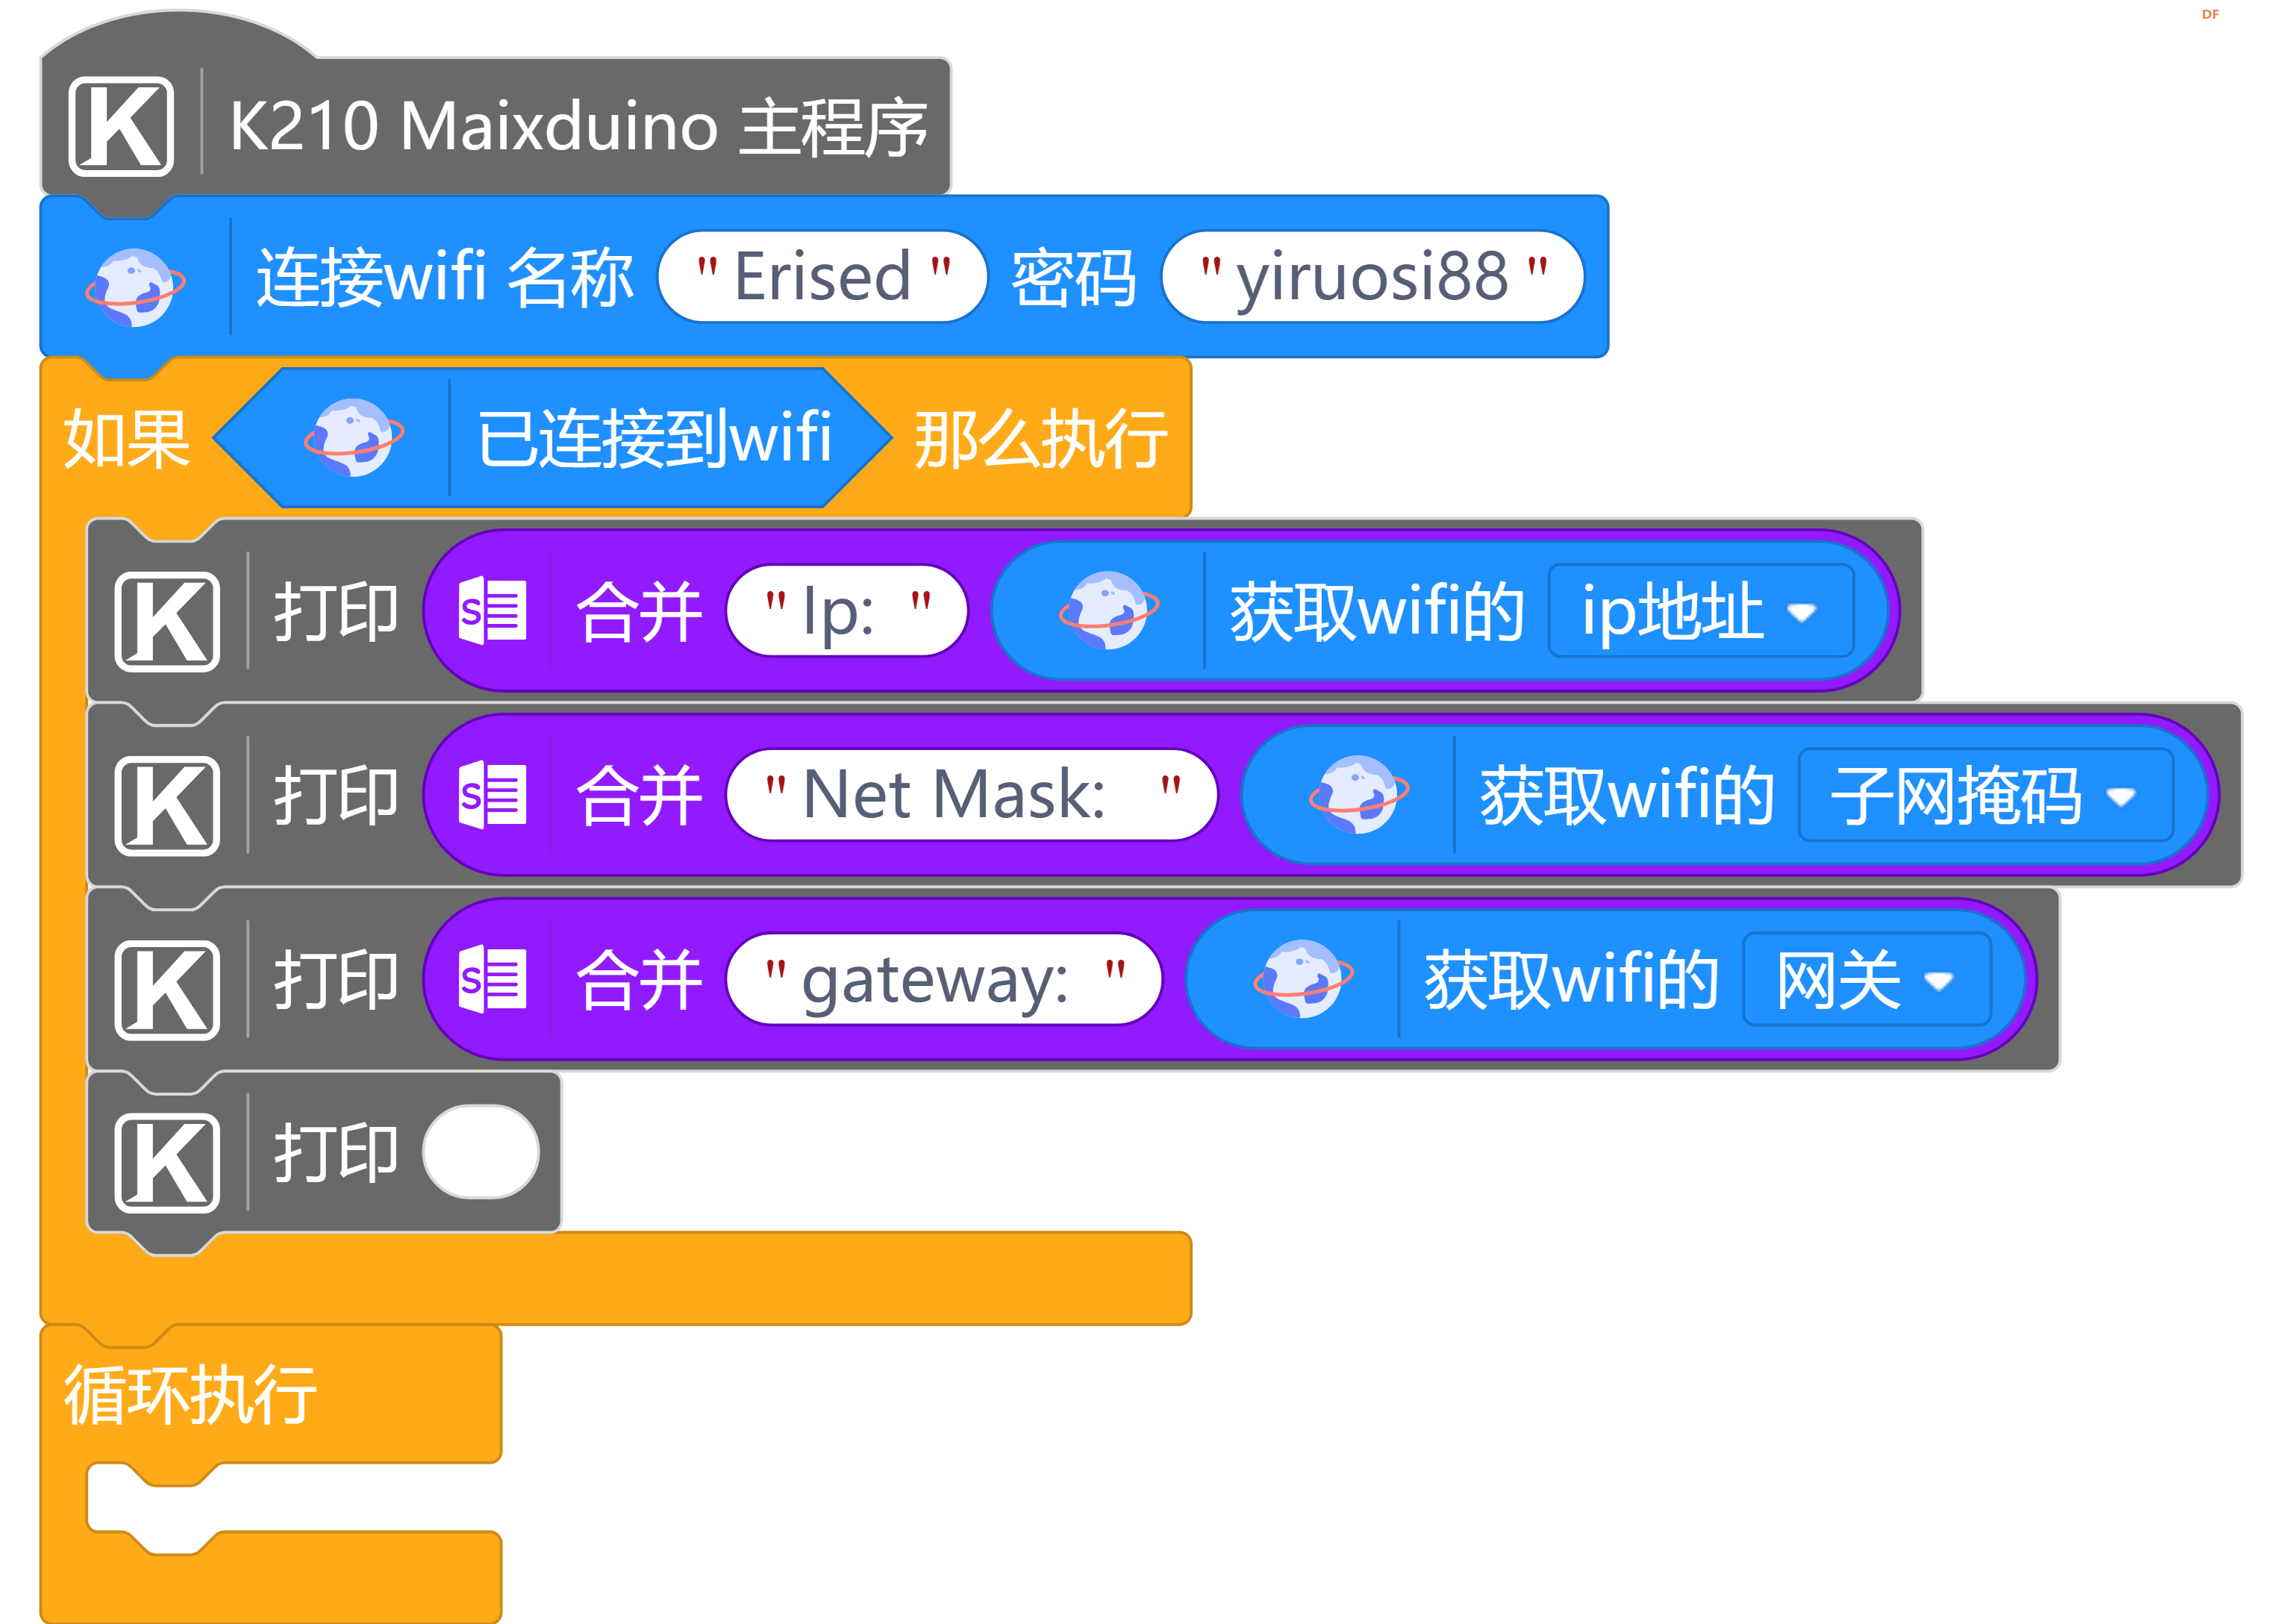 【mind+ maixduino用户库】网络Network图7